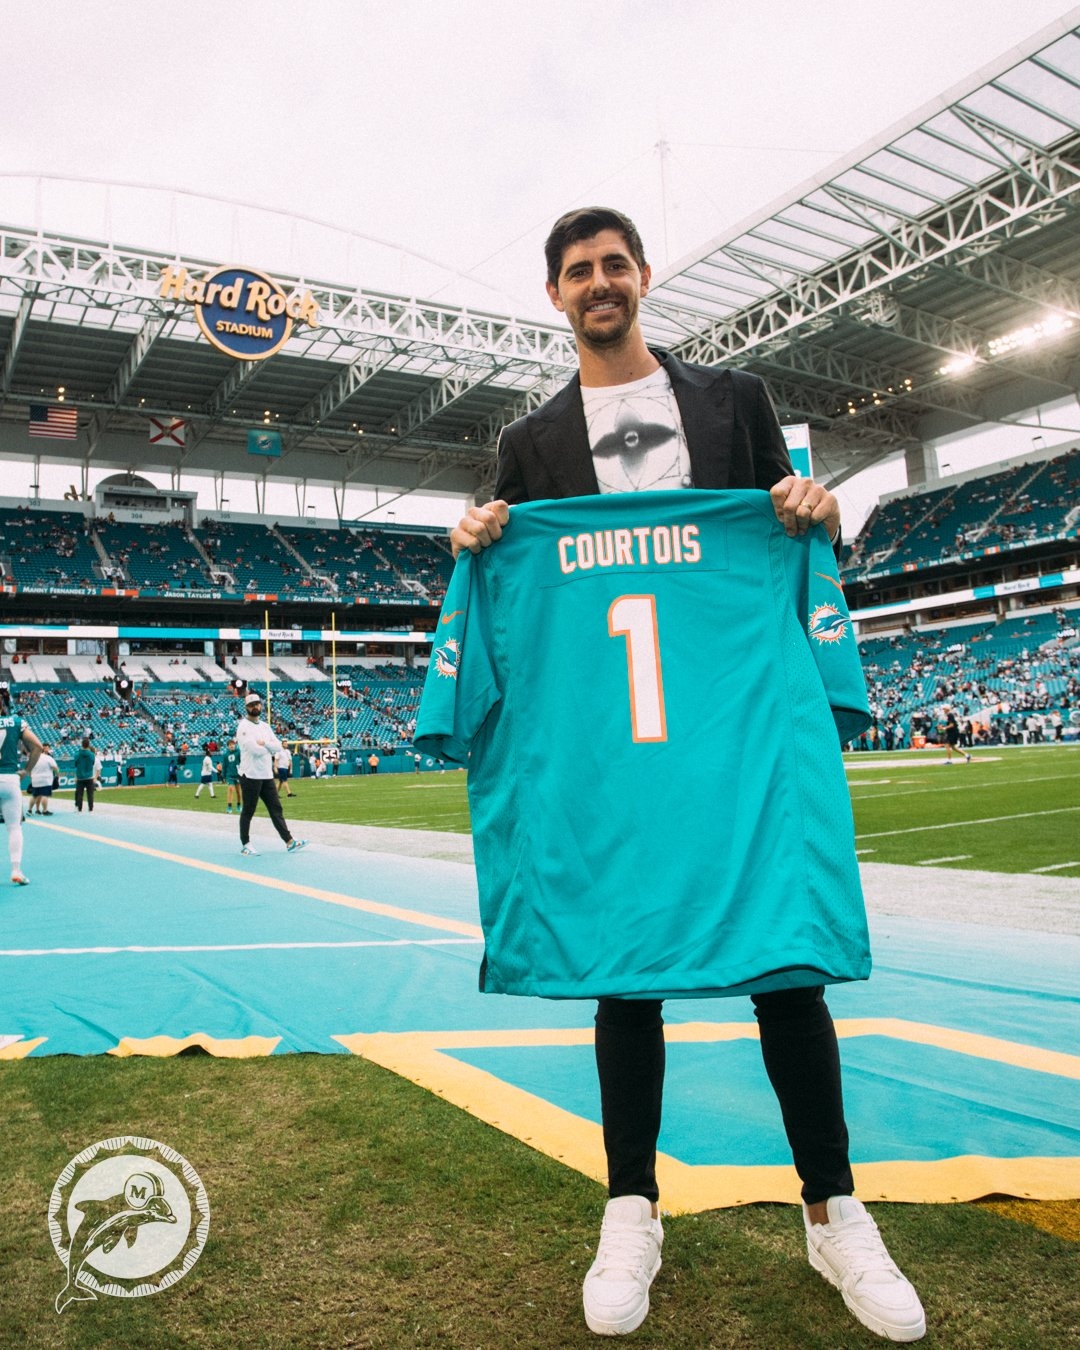 库尔图瓦现场观战NFL迈阿密海豚比赛，并获赠1号球衣